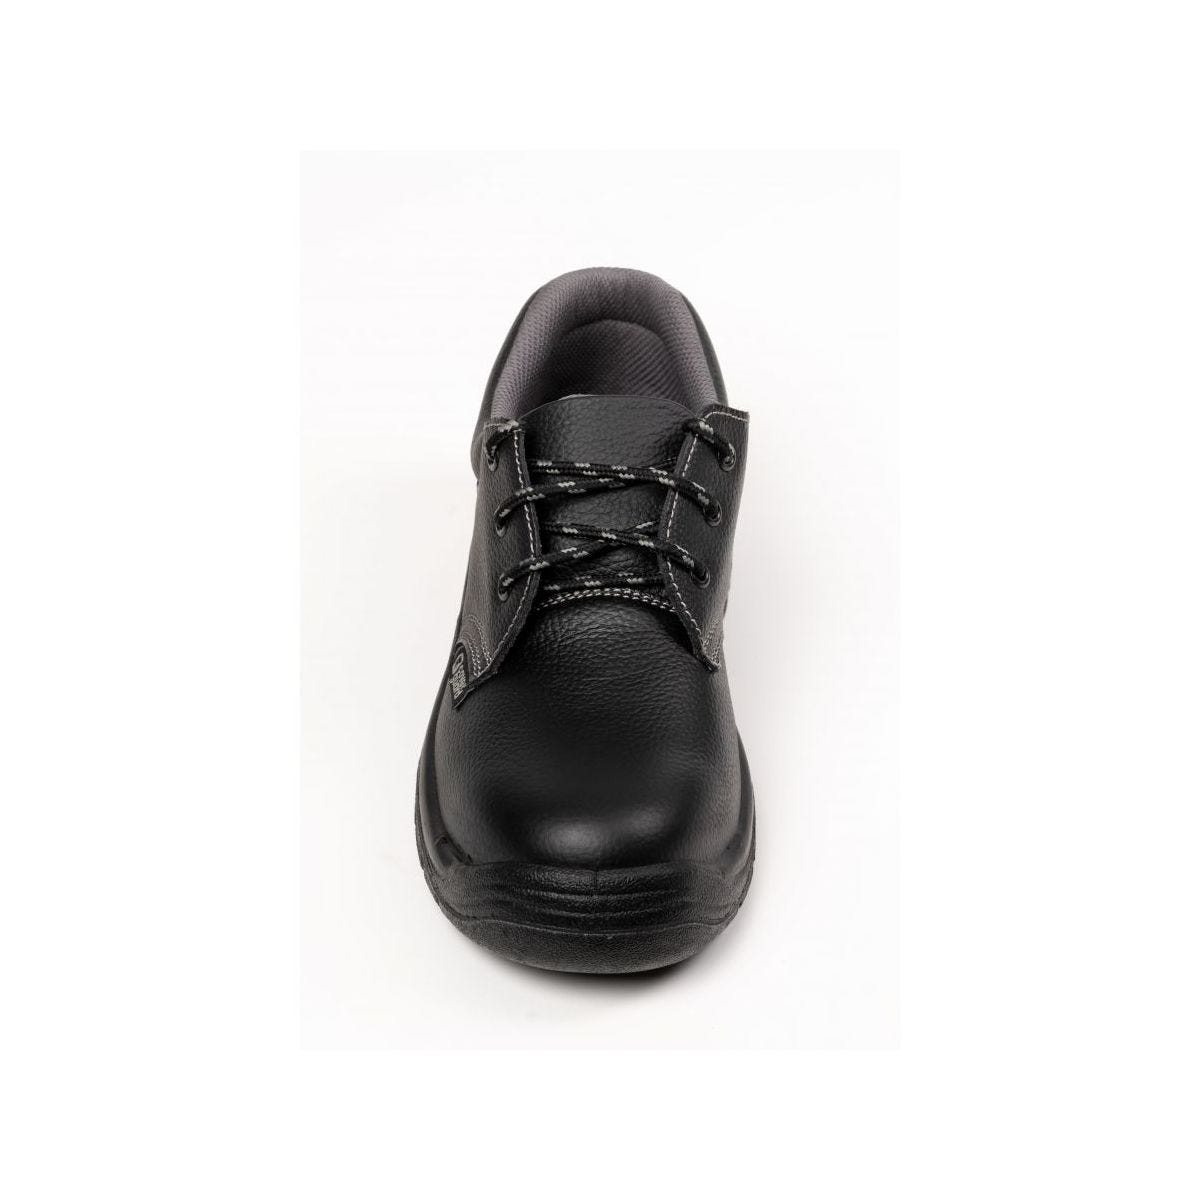 Chaussures de sécurité basses AGATE II S3 Noir - Coverguard - Taille 41 3